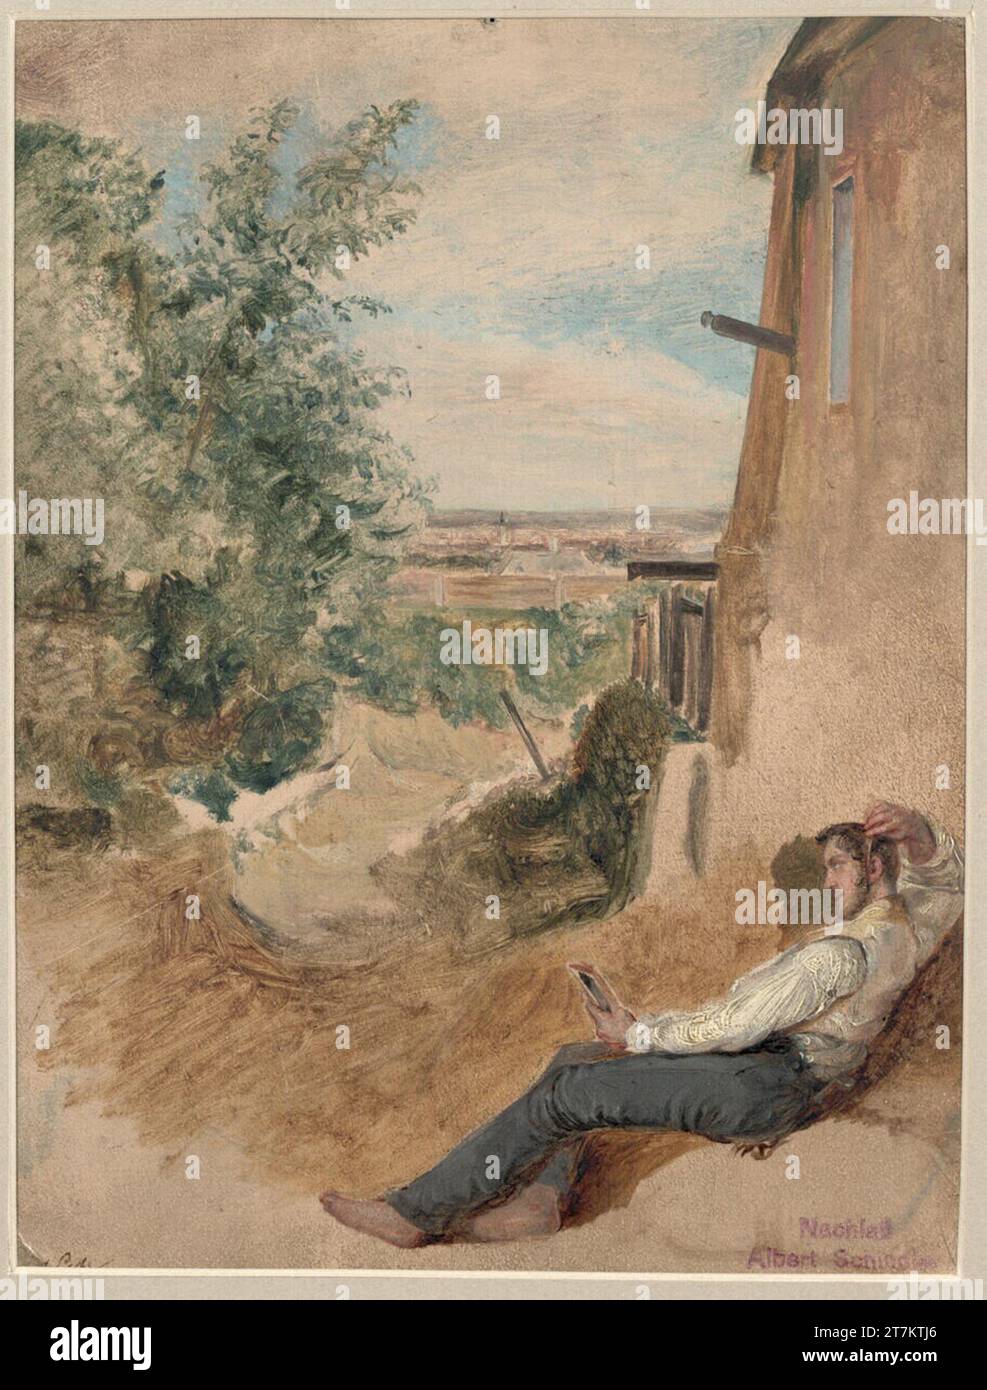 Albert Schindler vue de la ville en arrière-plan, couché sur le côté droit du sol sur le mur de la maison, un homme peigneur se penche dans les manches de chemise. huile Banque D'Images